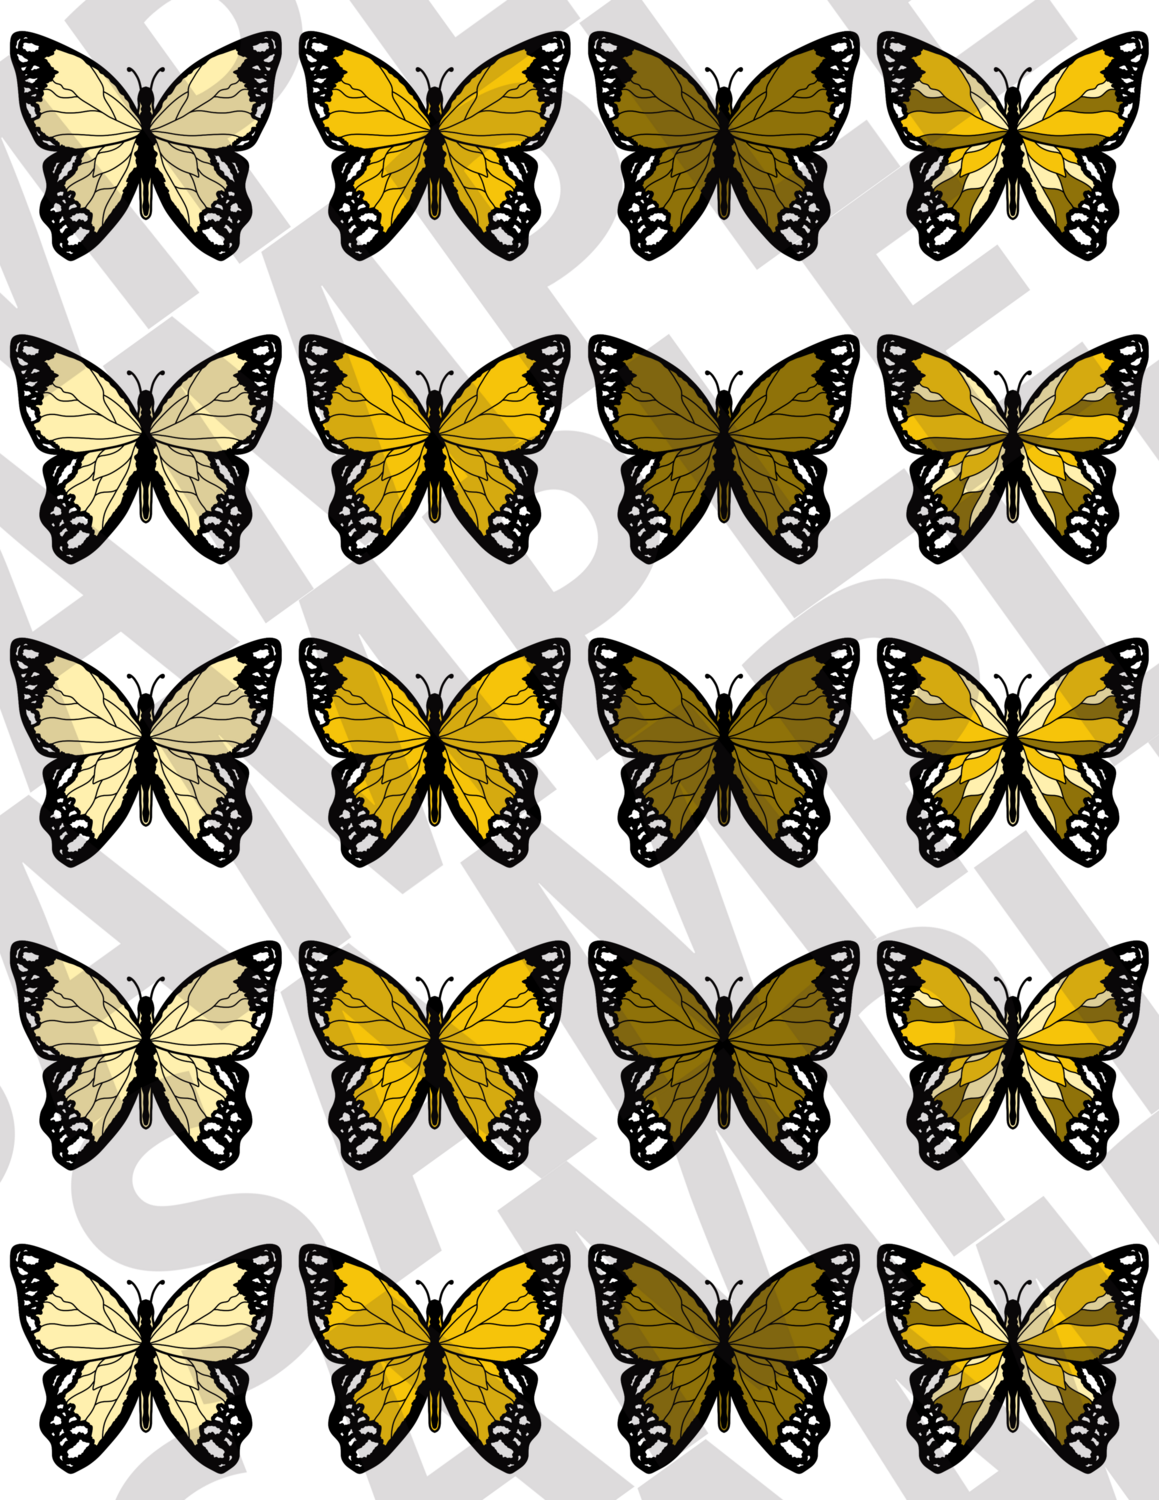 More Yellow - Butterflies